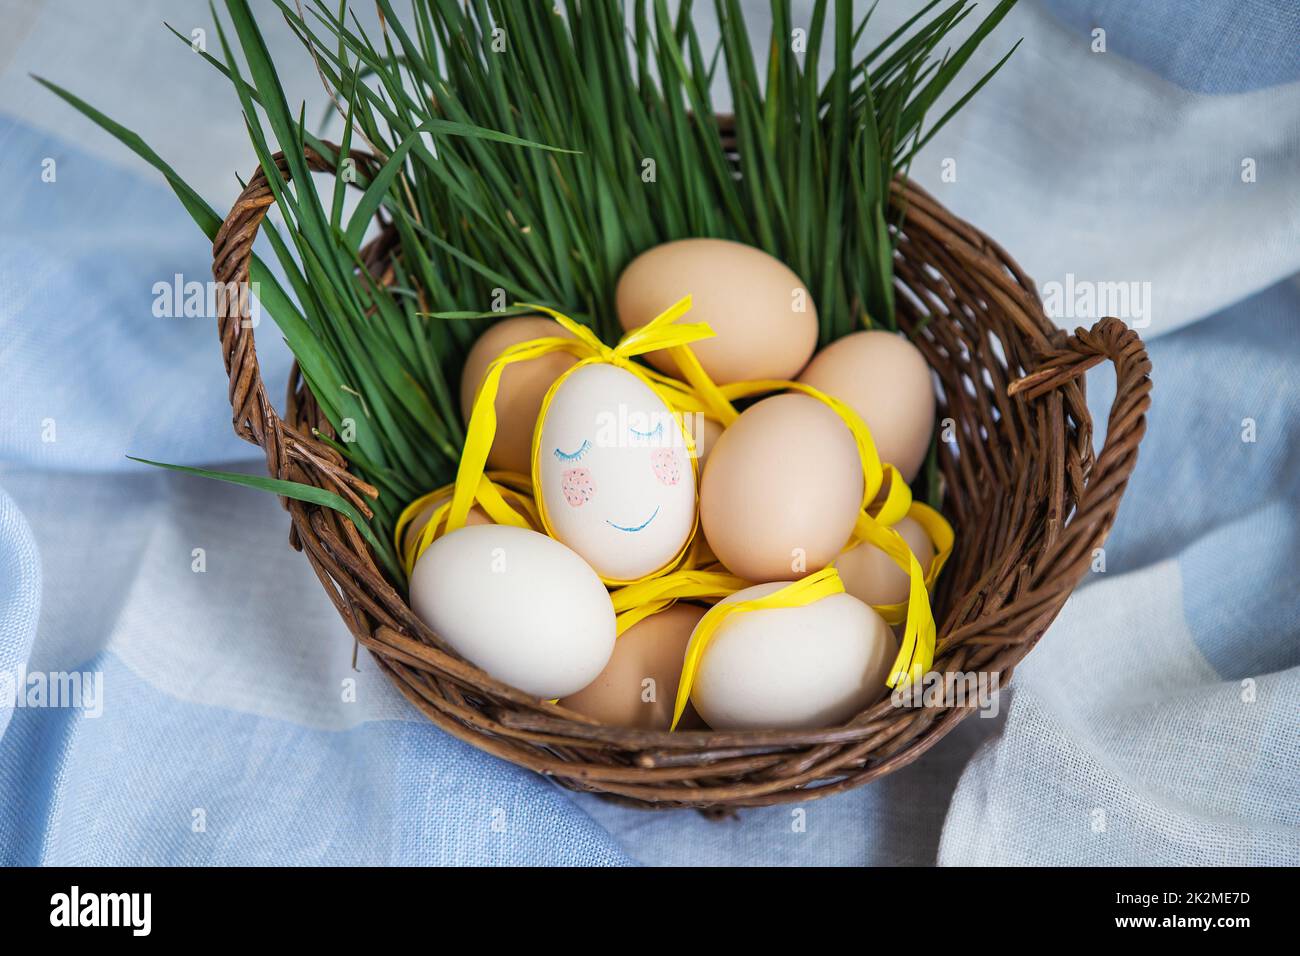 Uova di Pasqua dipinte, un uovo con un viso carino, le uova giacciono in un cesto di legno insieme all'erba verde. Cartolina di Pasqua. Foto Stock